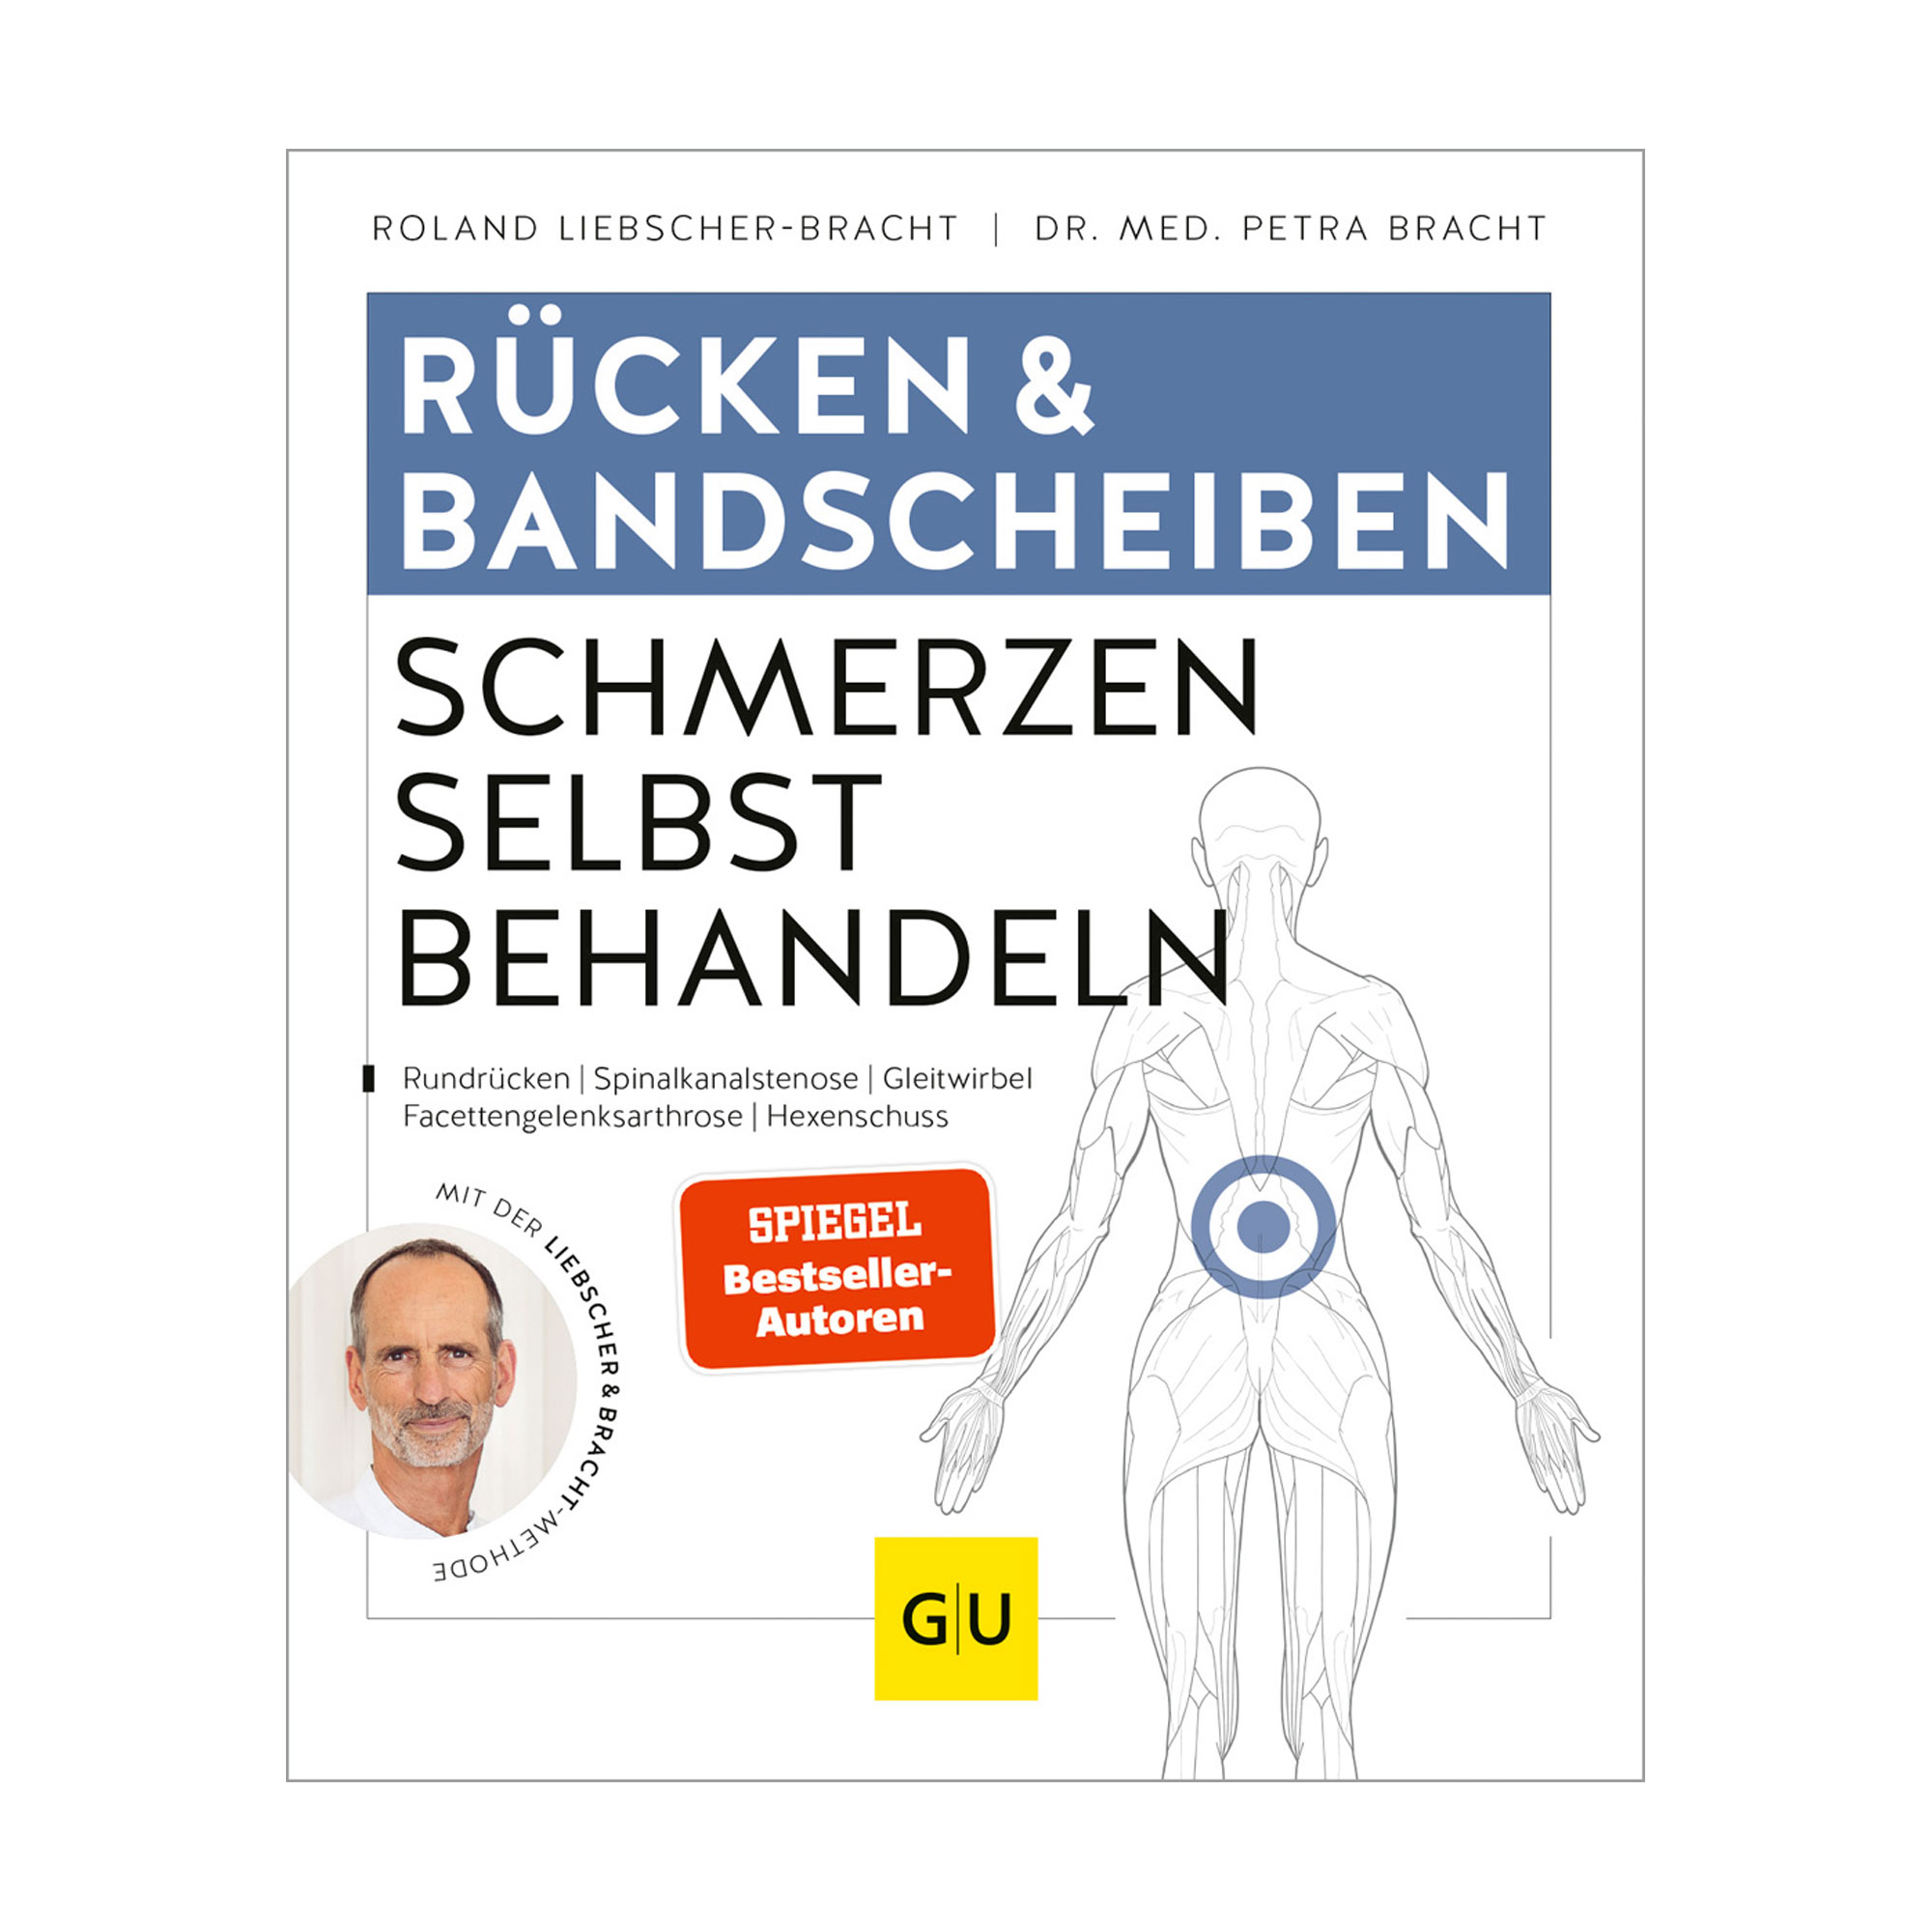 Praktisches Übungsbuch gegen Rückenschmerzen mit der Liebscher & Bracht-Methode.